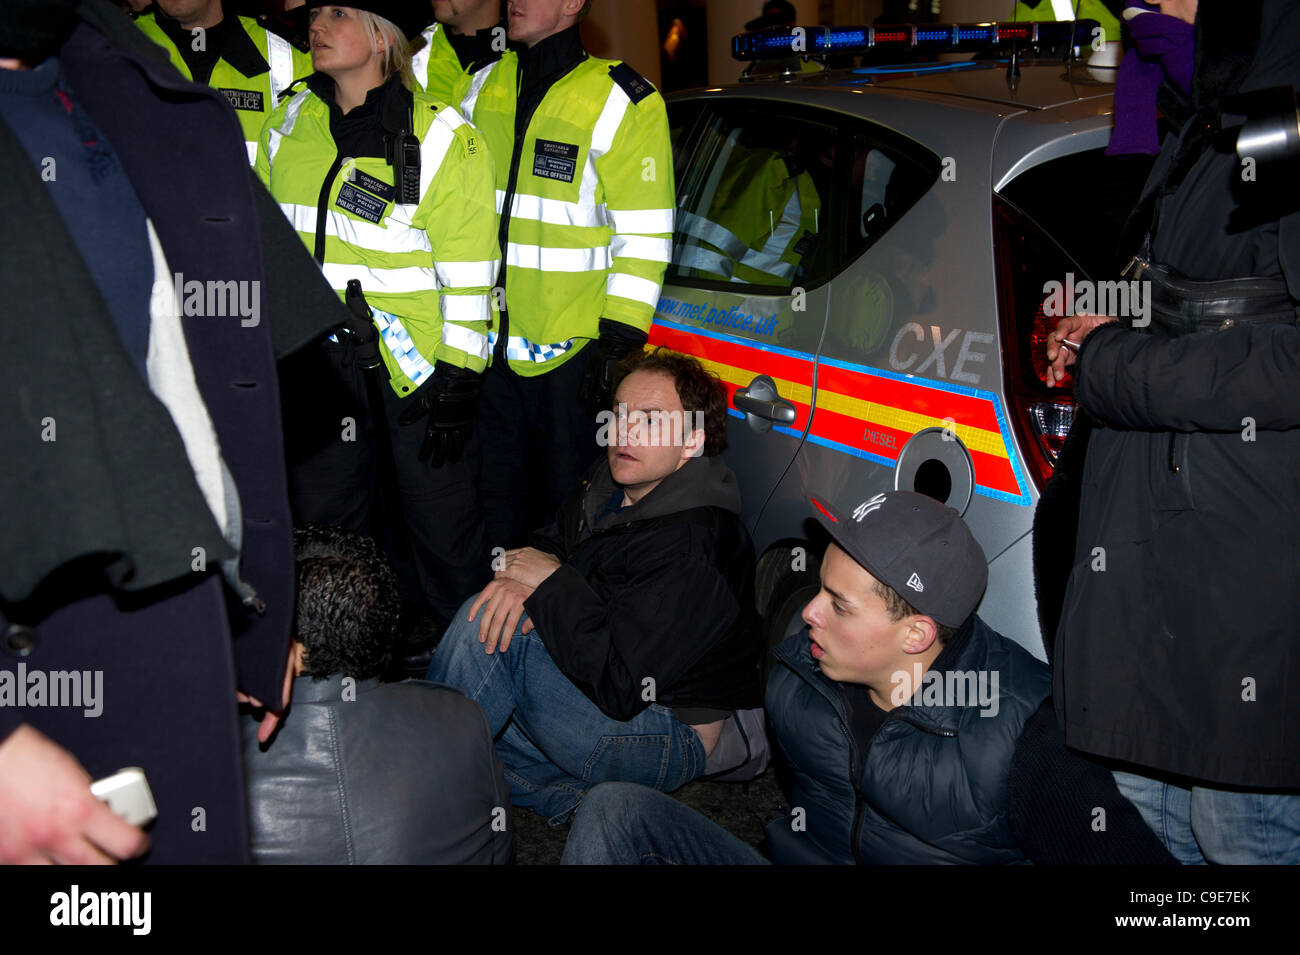 30. November 2011, Haymarket, London. Demonstranten versuchen, blockieren den Weg, um zu verhindern, dass ein Polizeifahrzeug verlassen Containg Gefangene, die während der kurzen Besetzung von Panton House in London festgenommen wurden. Die sitzen Protest war kurz und schnell bewegt die Polizei die Demonstranten auf. Stockfoto